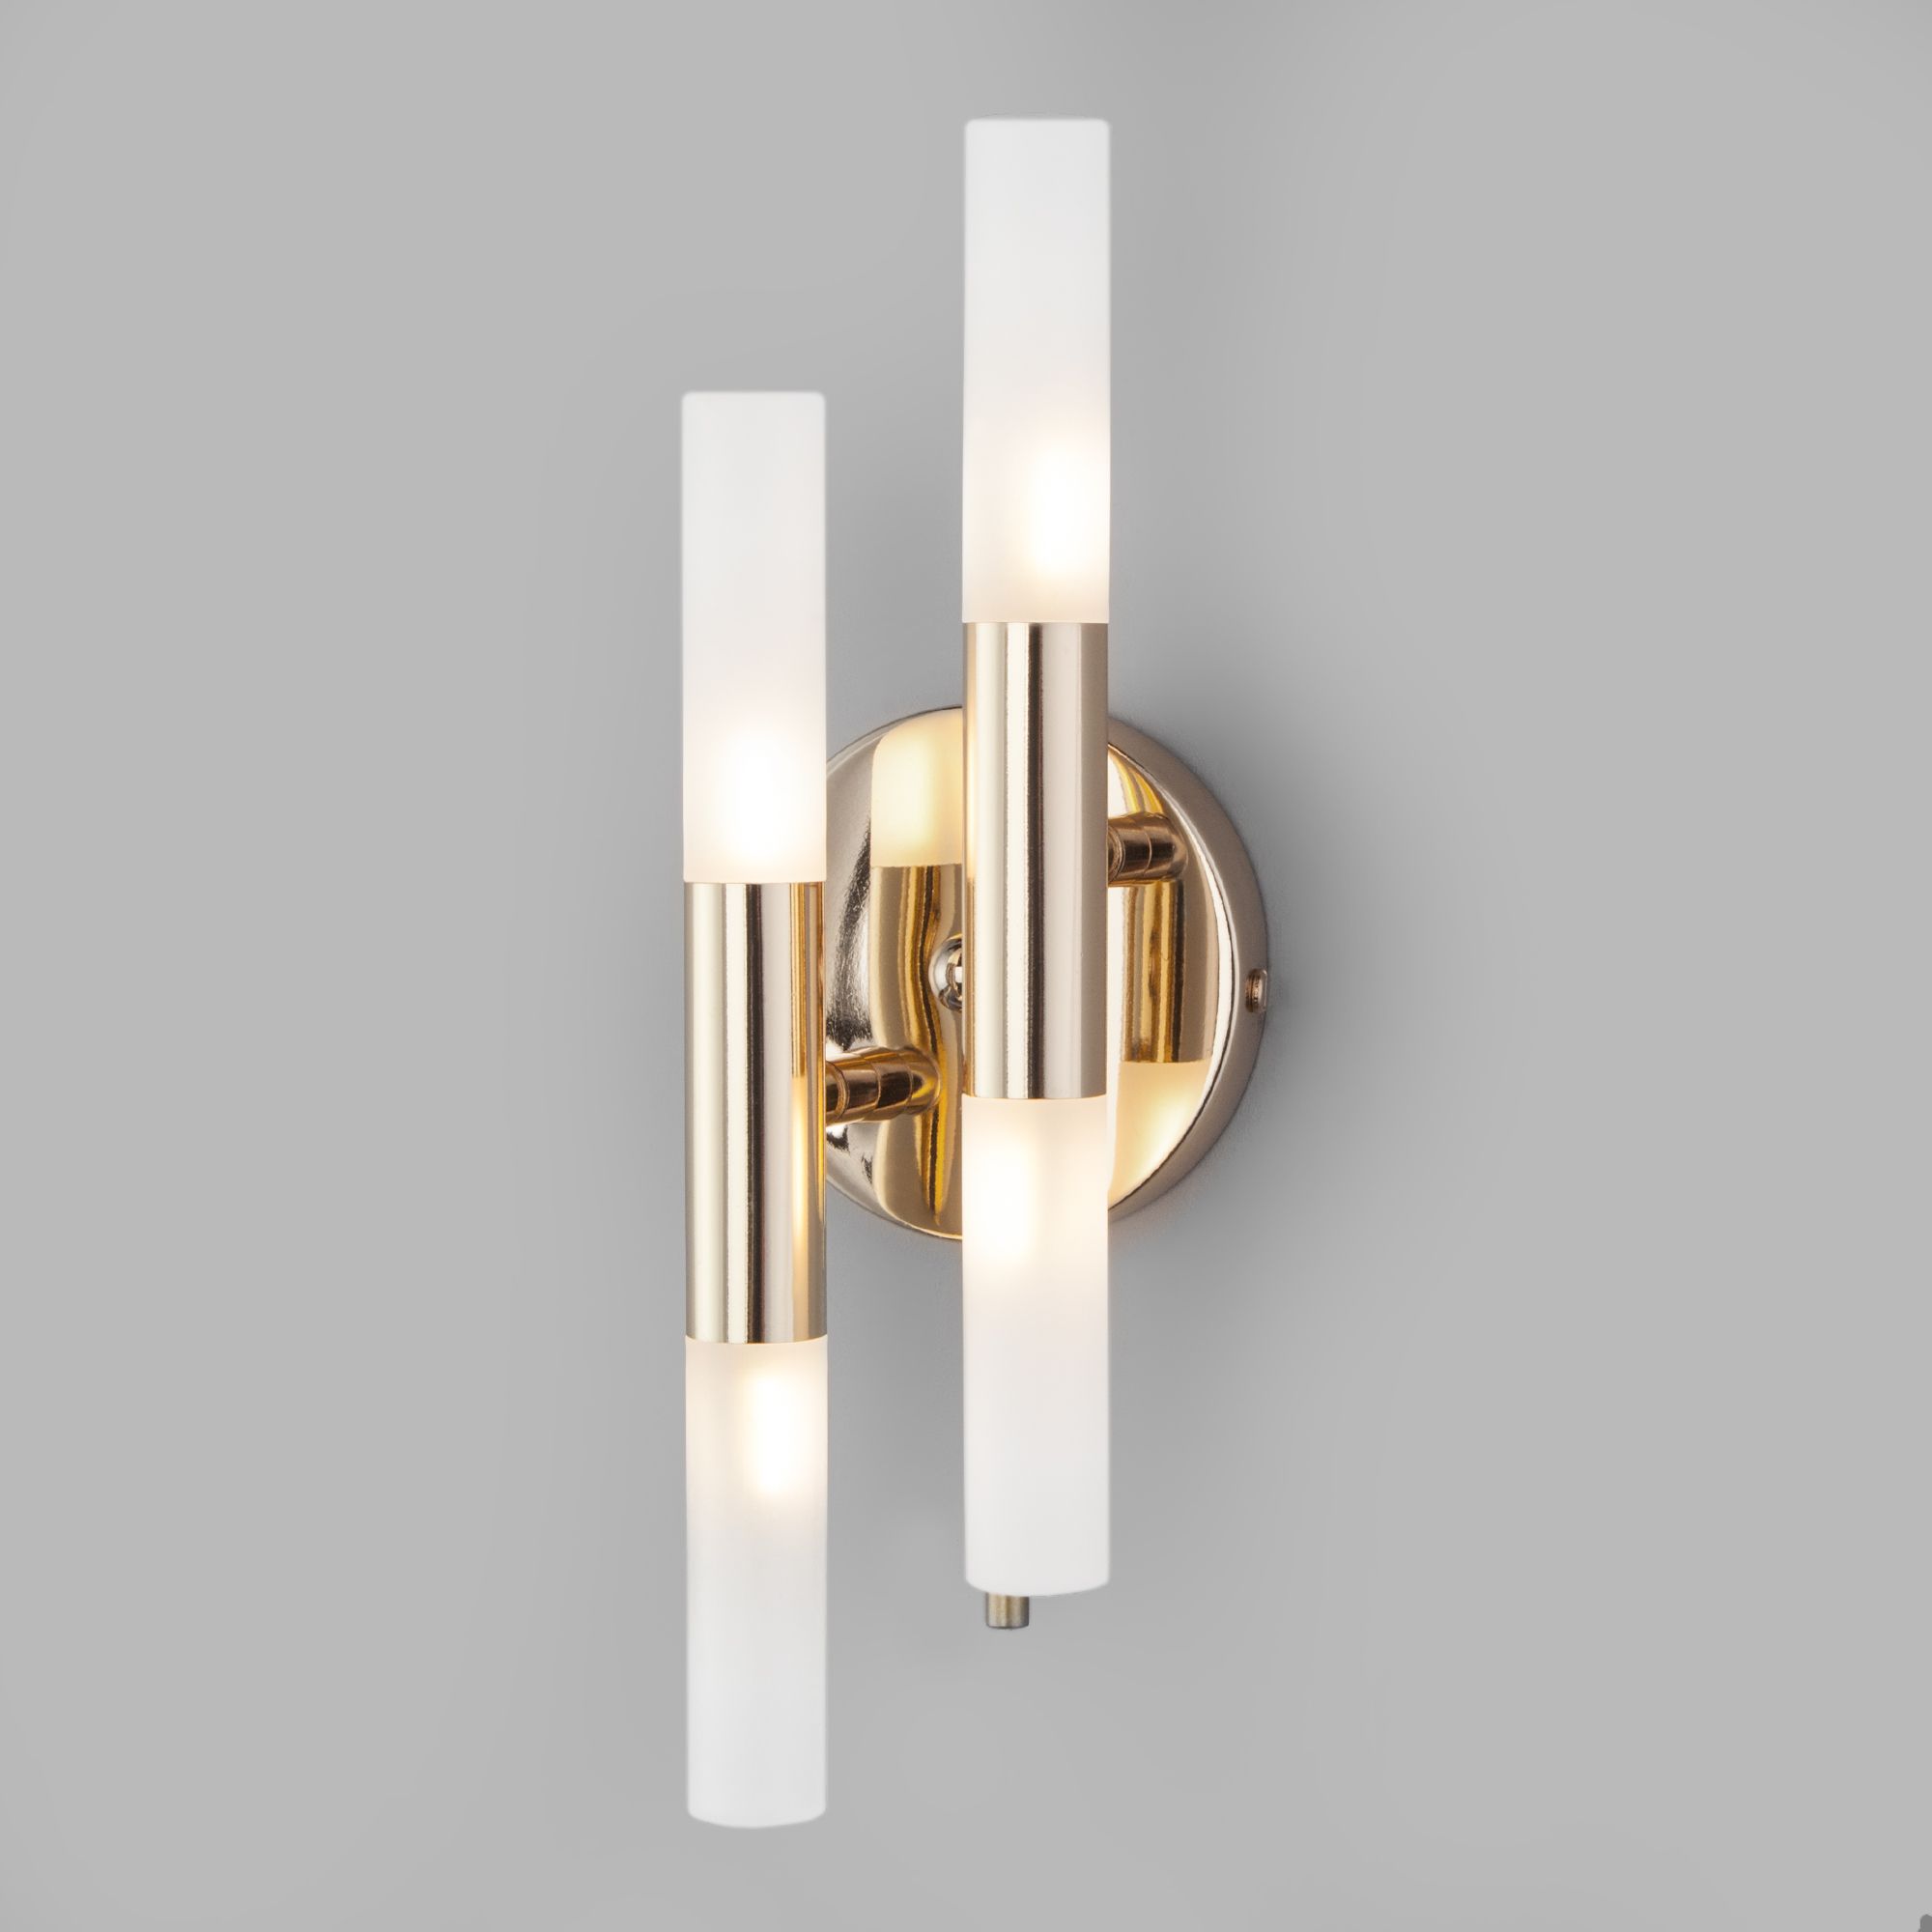 Настенный светильник с акриловыми плафонами Bogate's Bastone 351/4 золото / белый. Фото 1